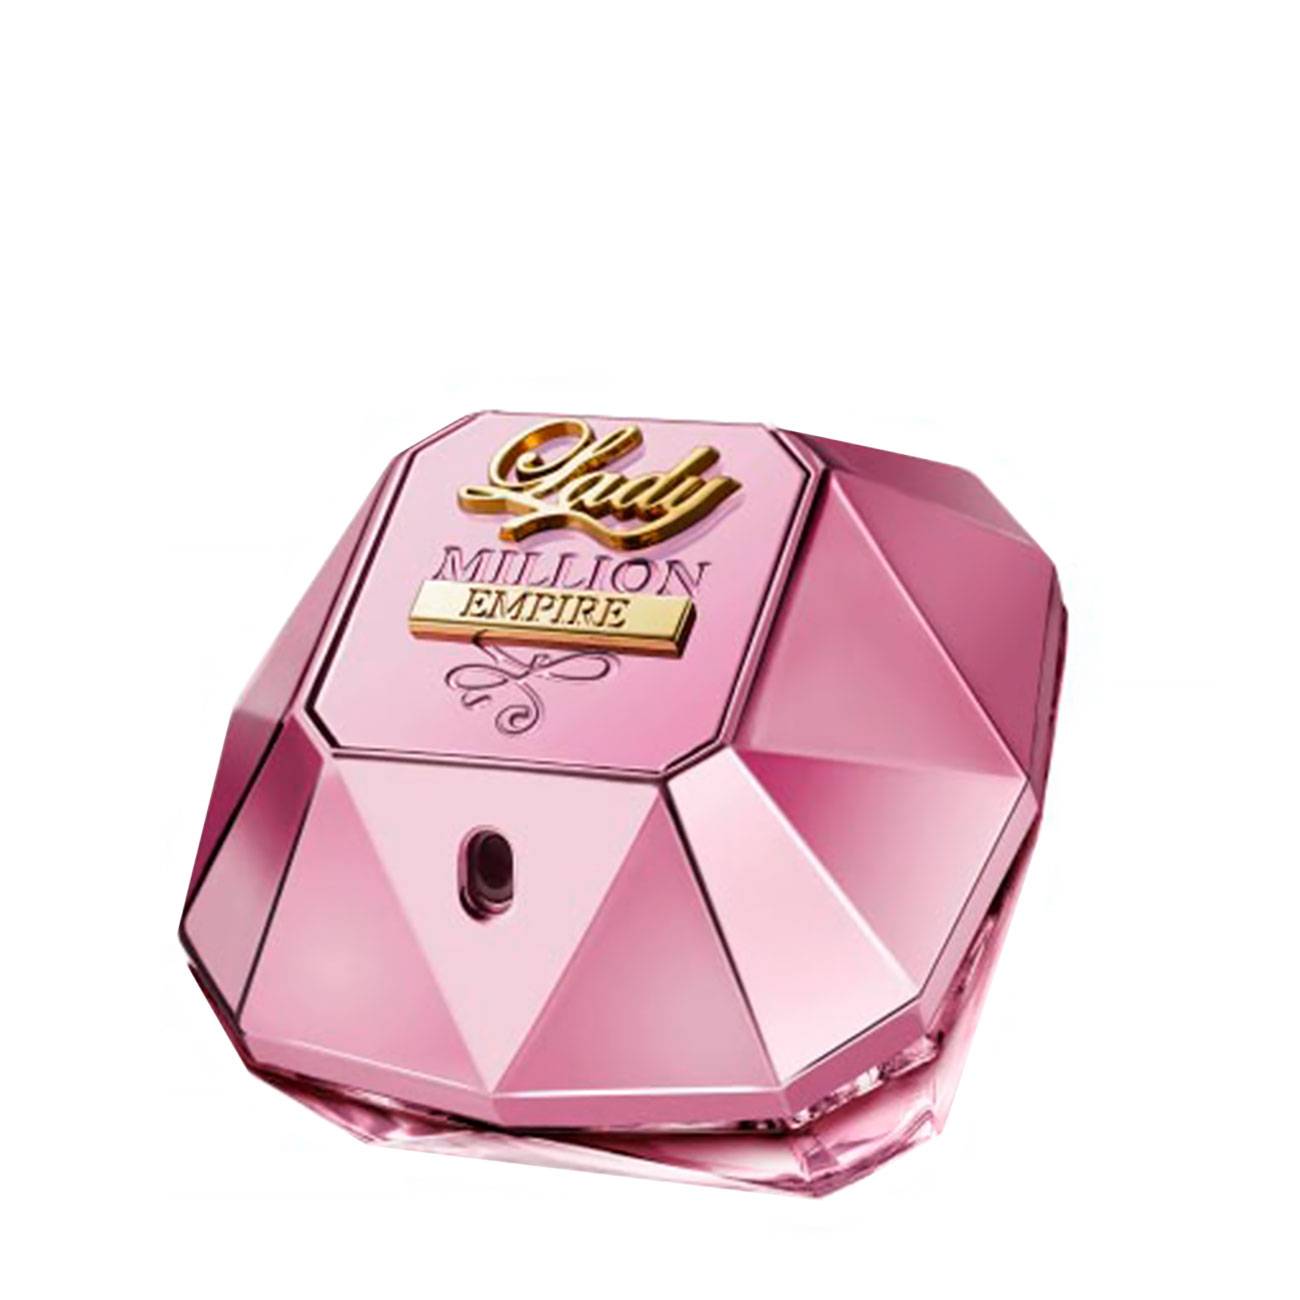 Apa de Parfum Paco Rabanne LADY MILLION EMPIRE 50ml cu comanda online